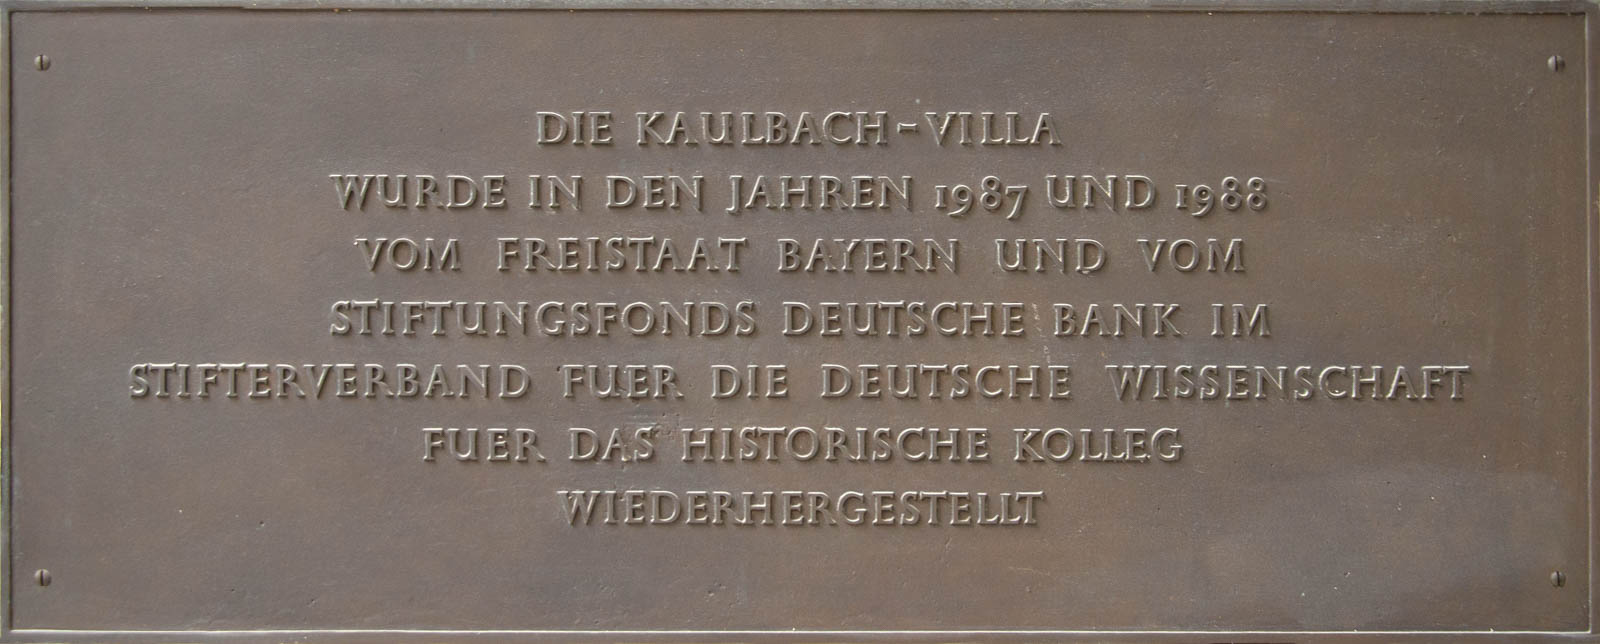 Kaulbach-Villa